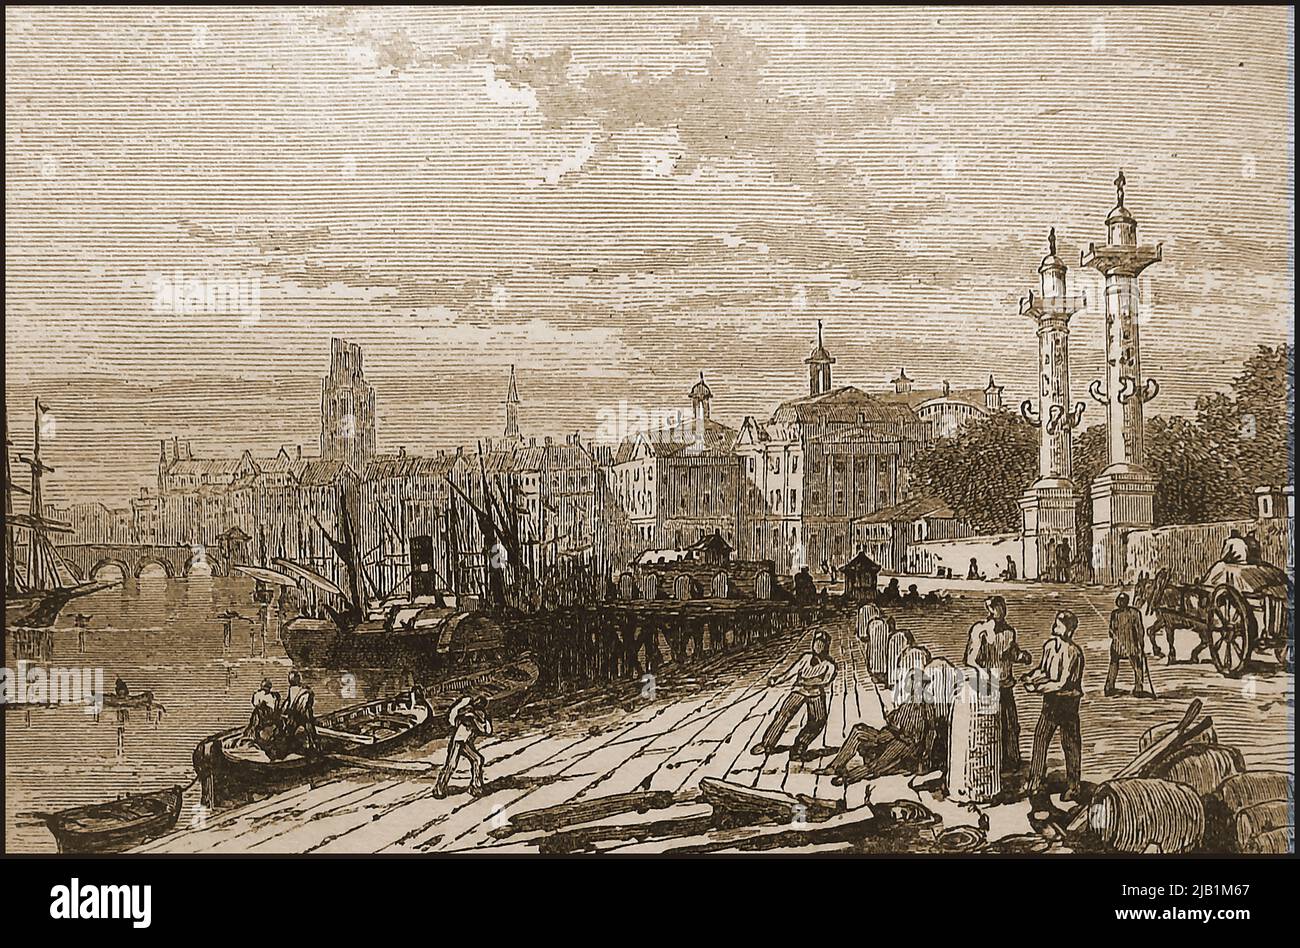 A 19th century engraving showing the quay at Bordeaux, France in 1893   -----   Une gravure du 19ème siècle montrant le quai de Bordeaux, France en 1893 Stock Photo